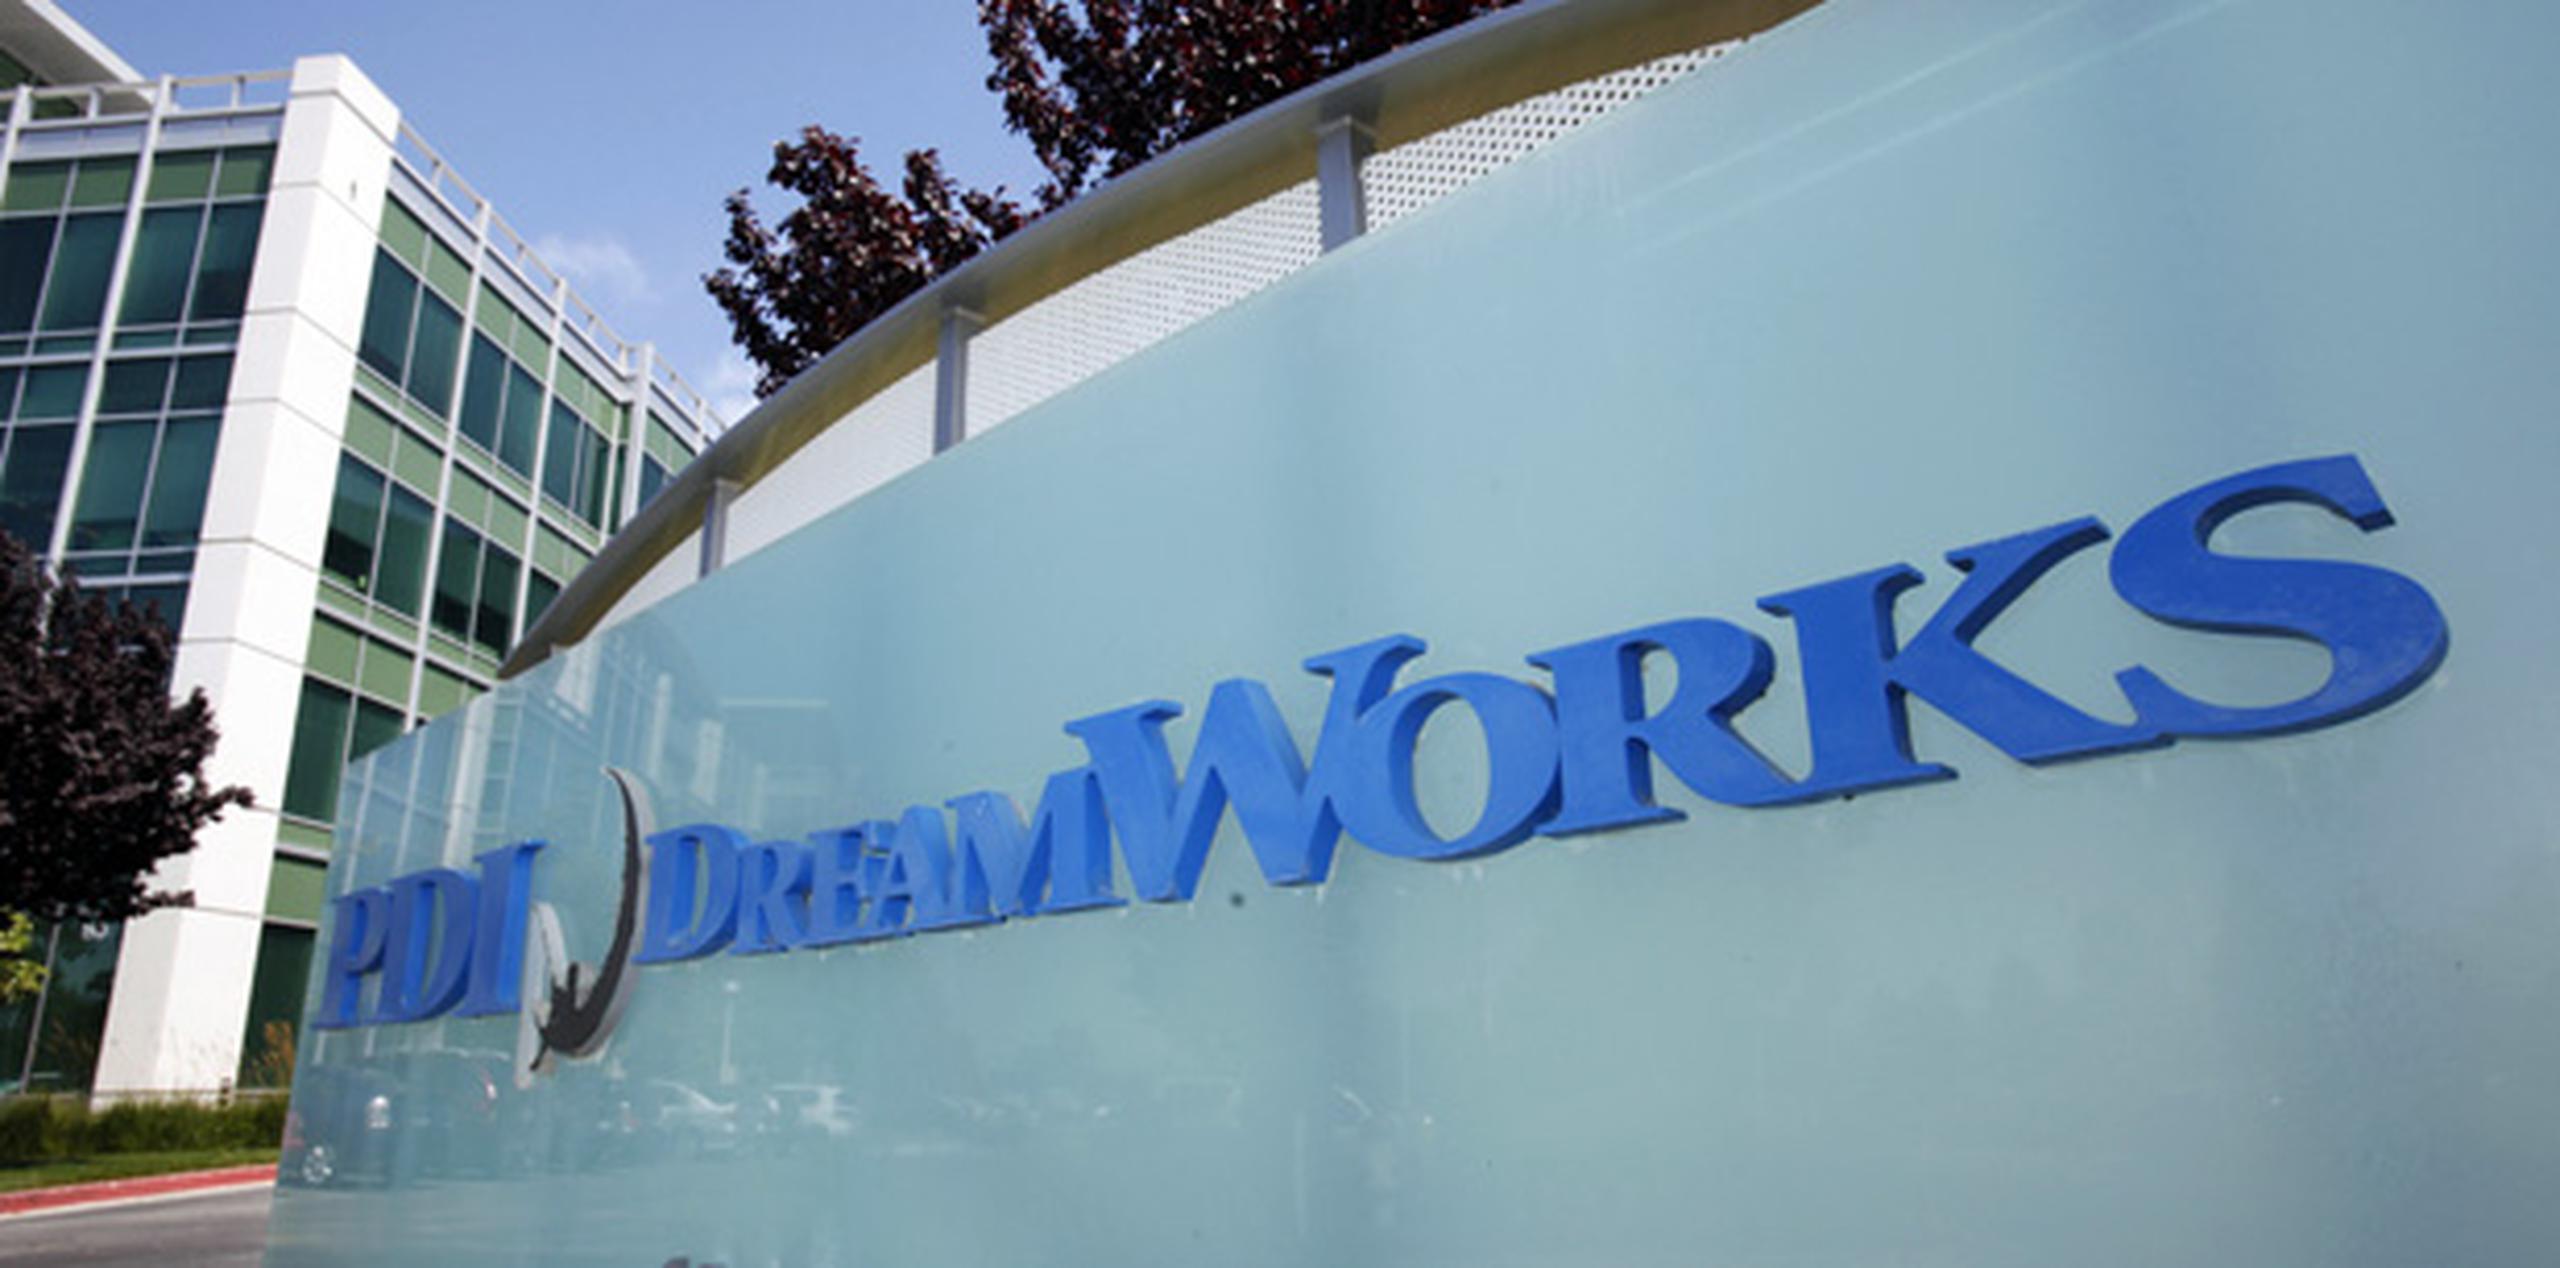 Para Dreamworks, la transacción forma parte de una importante iniciativa para ampliar su producción de televisión y la distribución a todo el mundo.